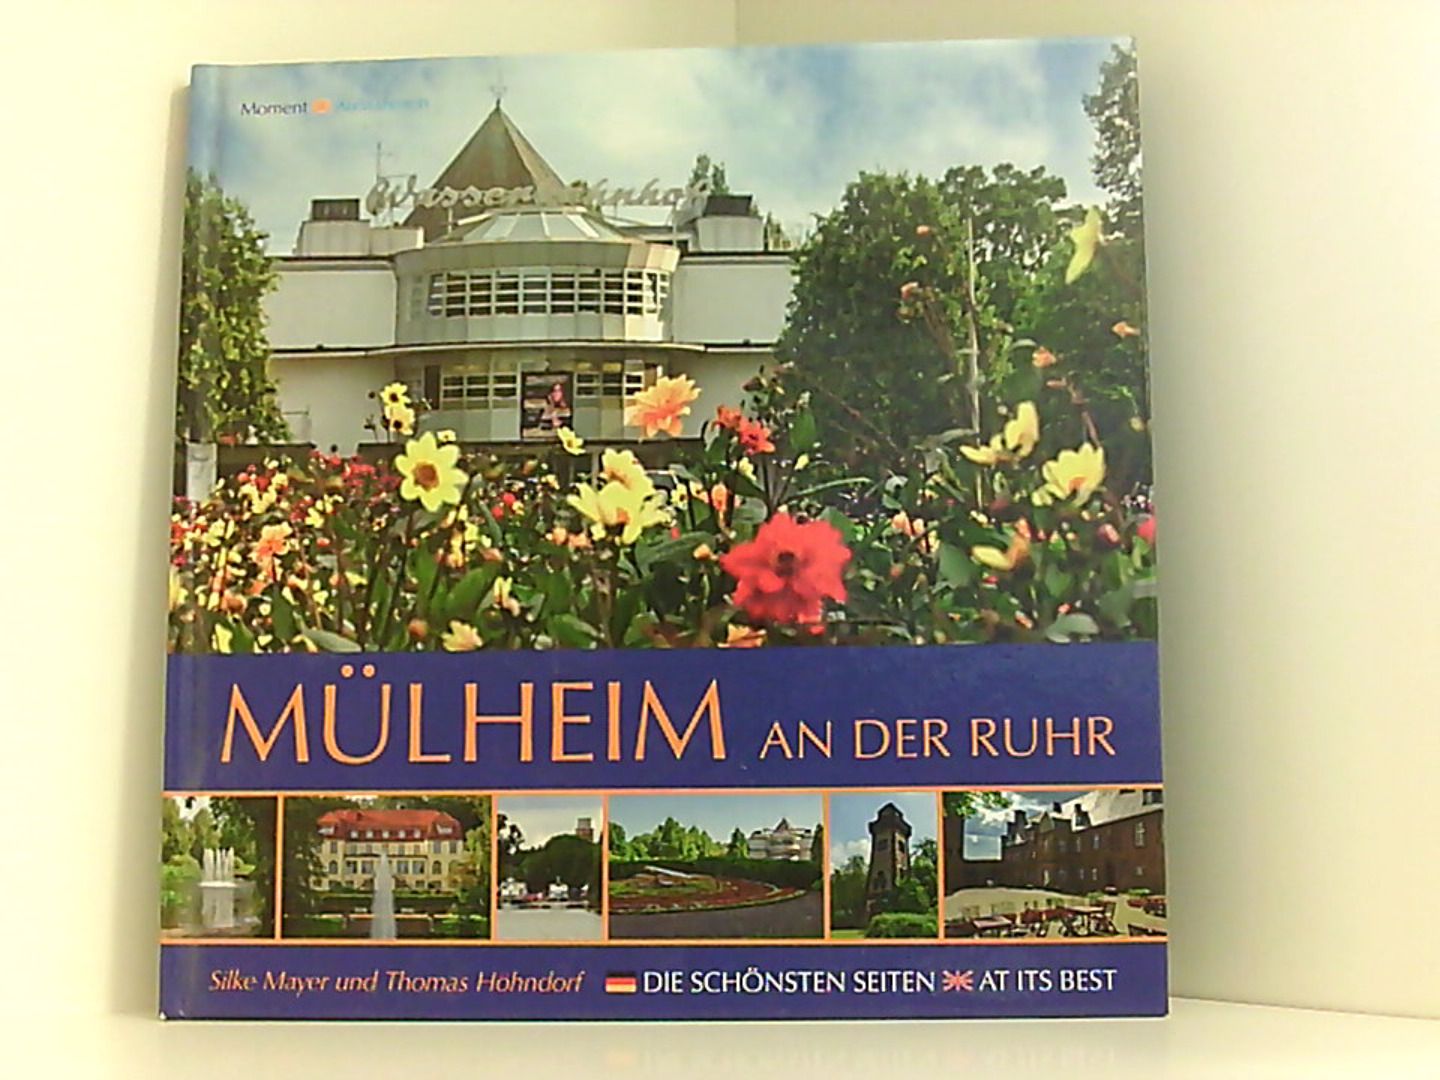 Mülheim an der Ruhr: Die schönsten Seiten - At its best (Momentaufnahmen) - Mayer, Silke und Thomas Höhndorf